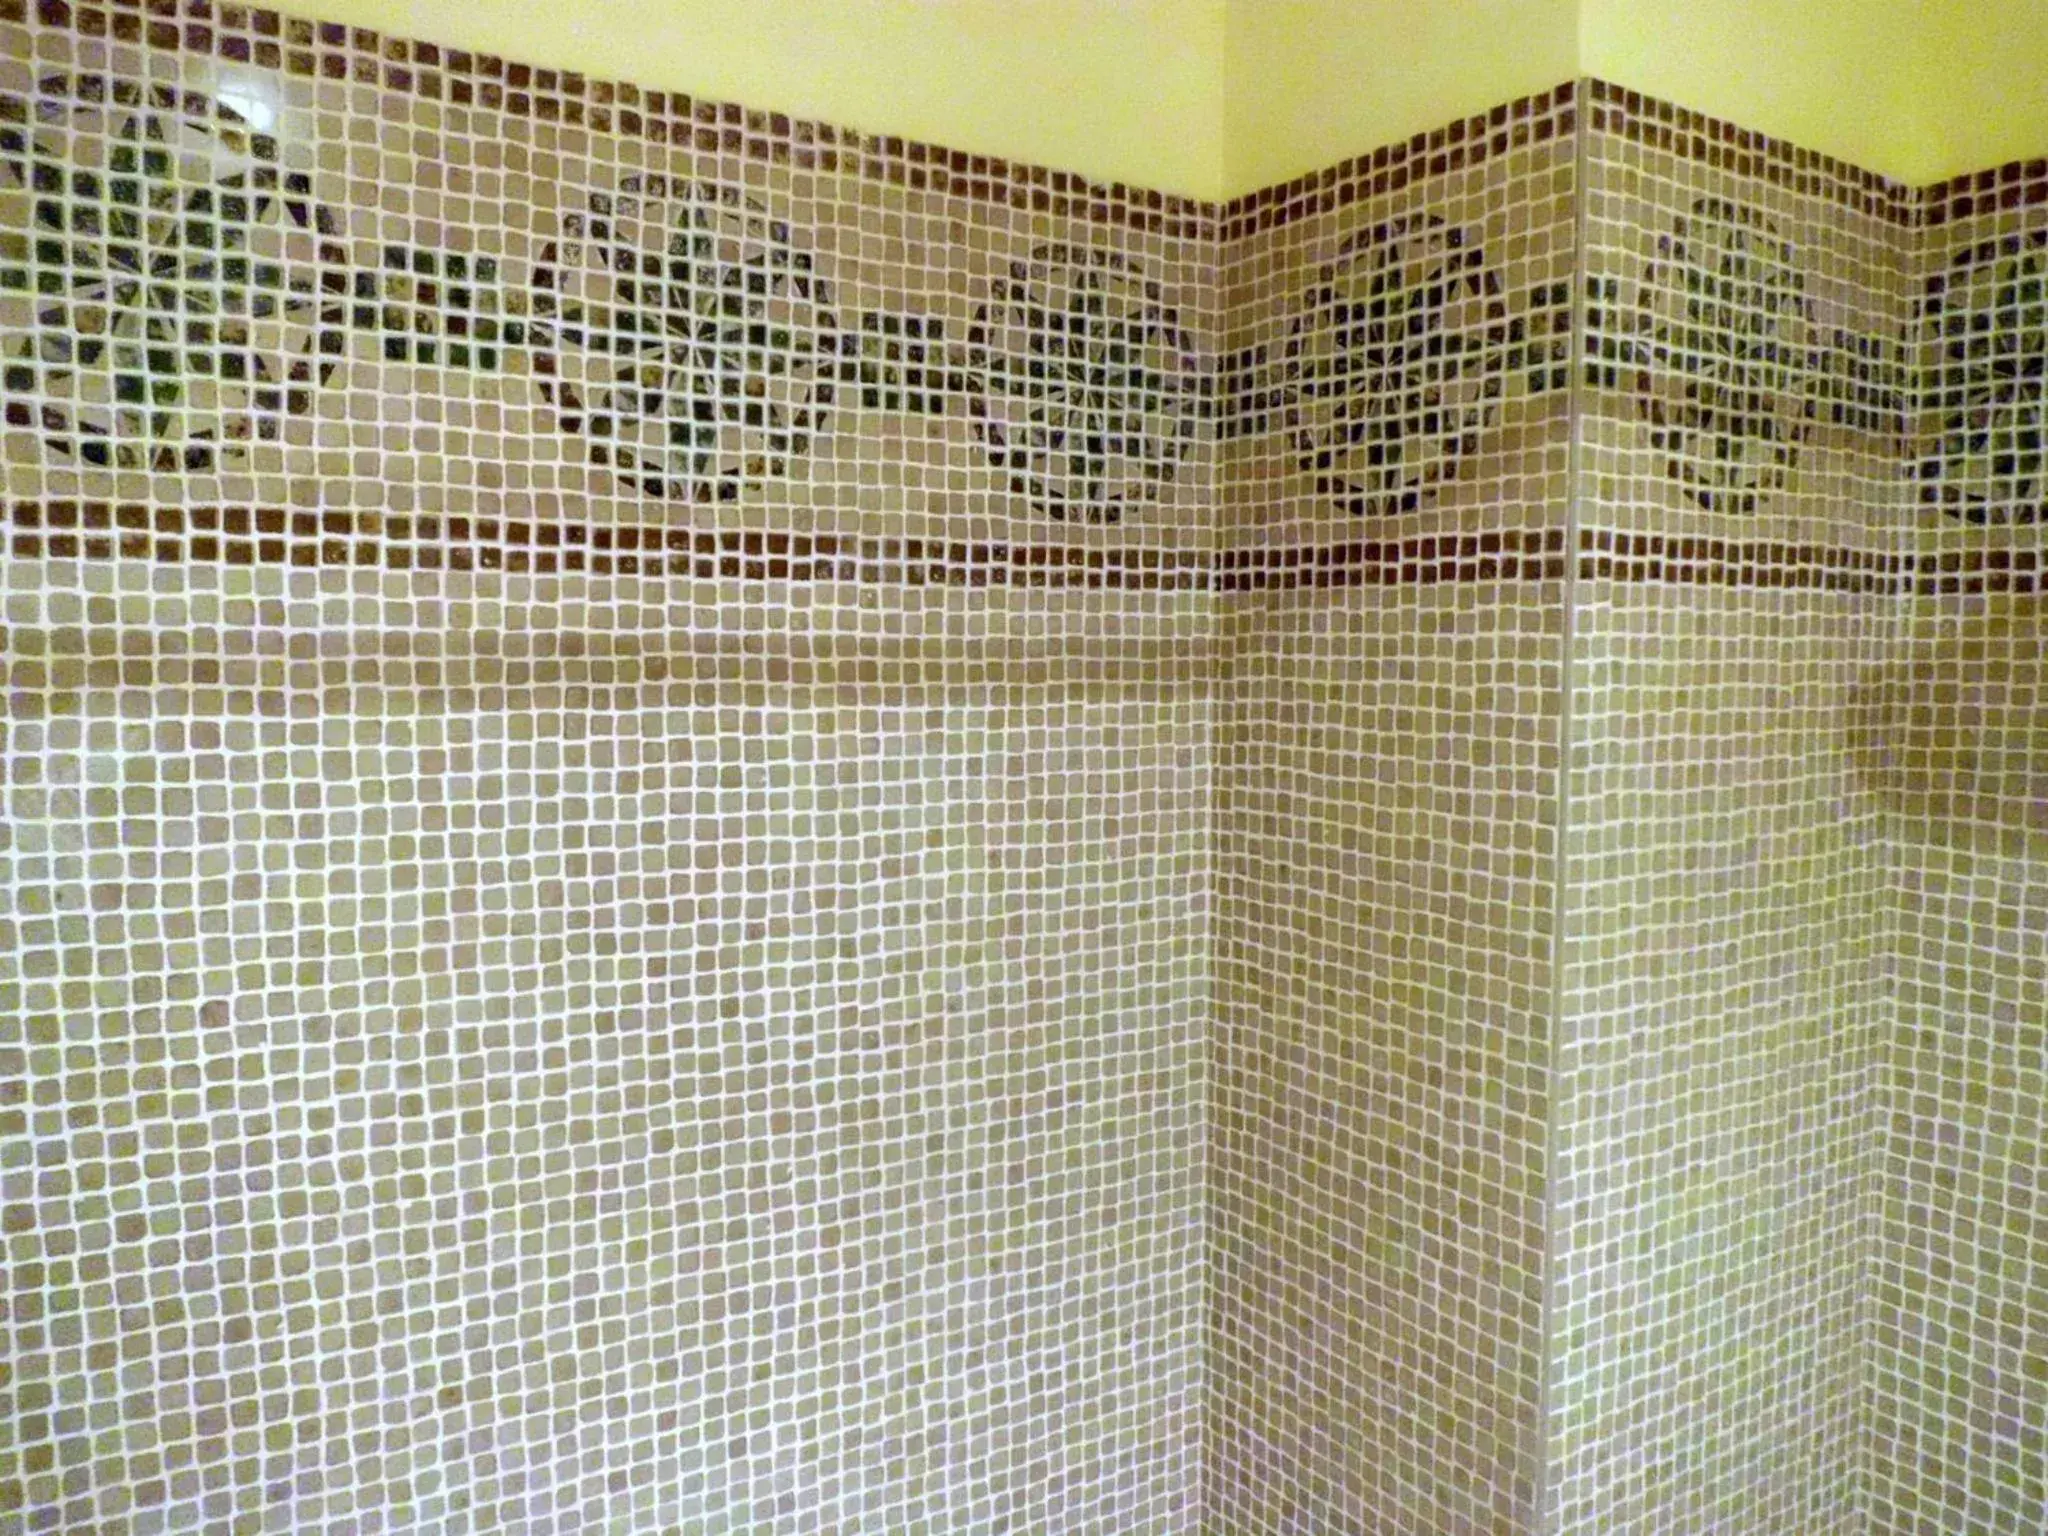 Bathroom in Hotel Vila do Alba